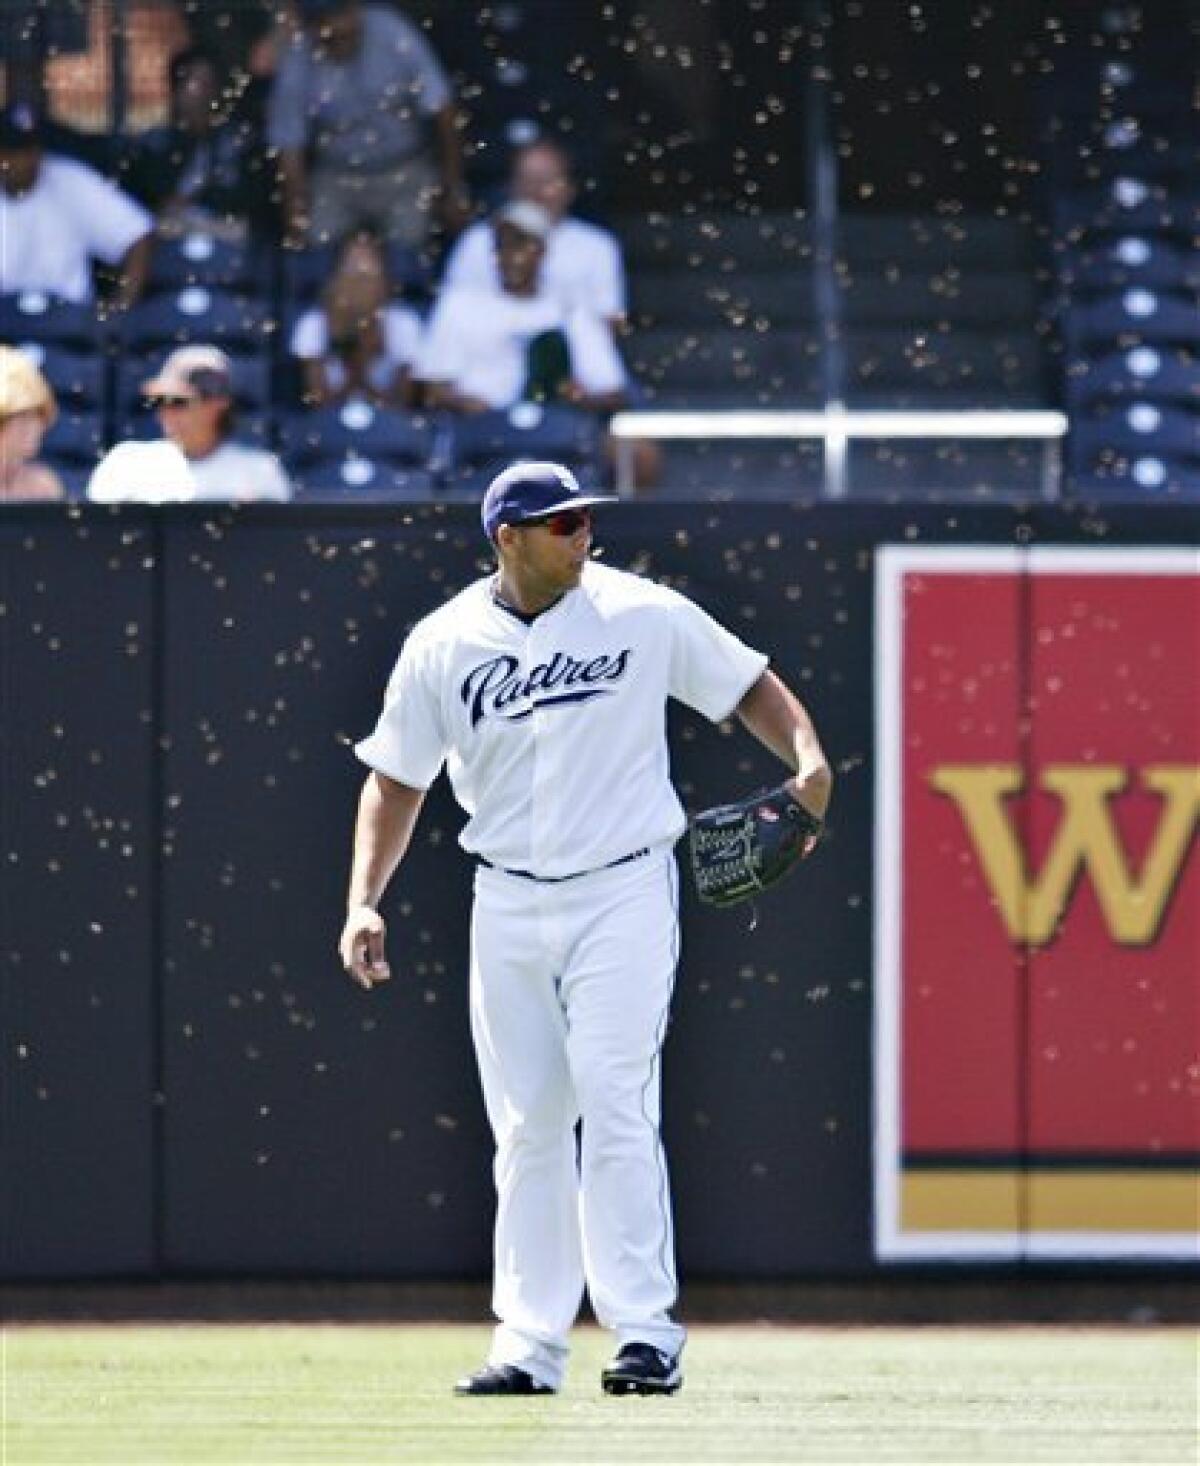 Un-bee-lievable: Bee swarm delays Astros' 7-2 win - The San Diego  Union-Tribune